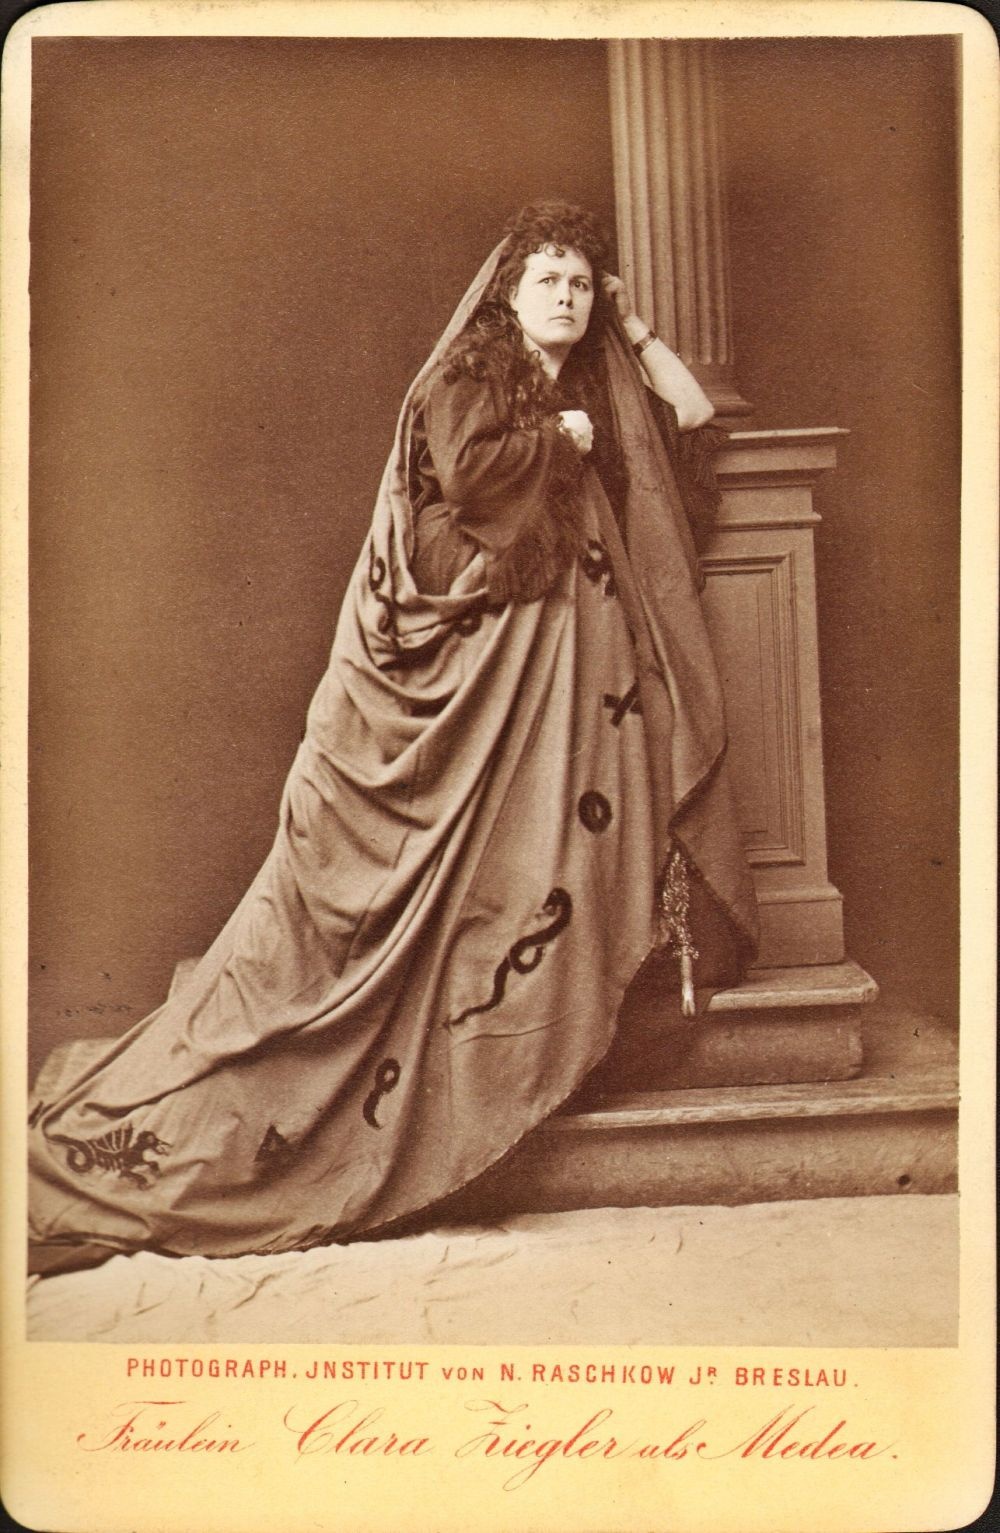 Clara Ziegler als Medea in der Fassung von Grillparzer (Meininger Museen: Theatermuseum "Zauberwelt der Kulisse" CC BY-NC-SA)